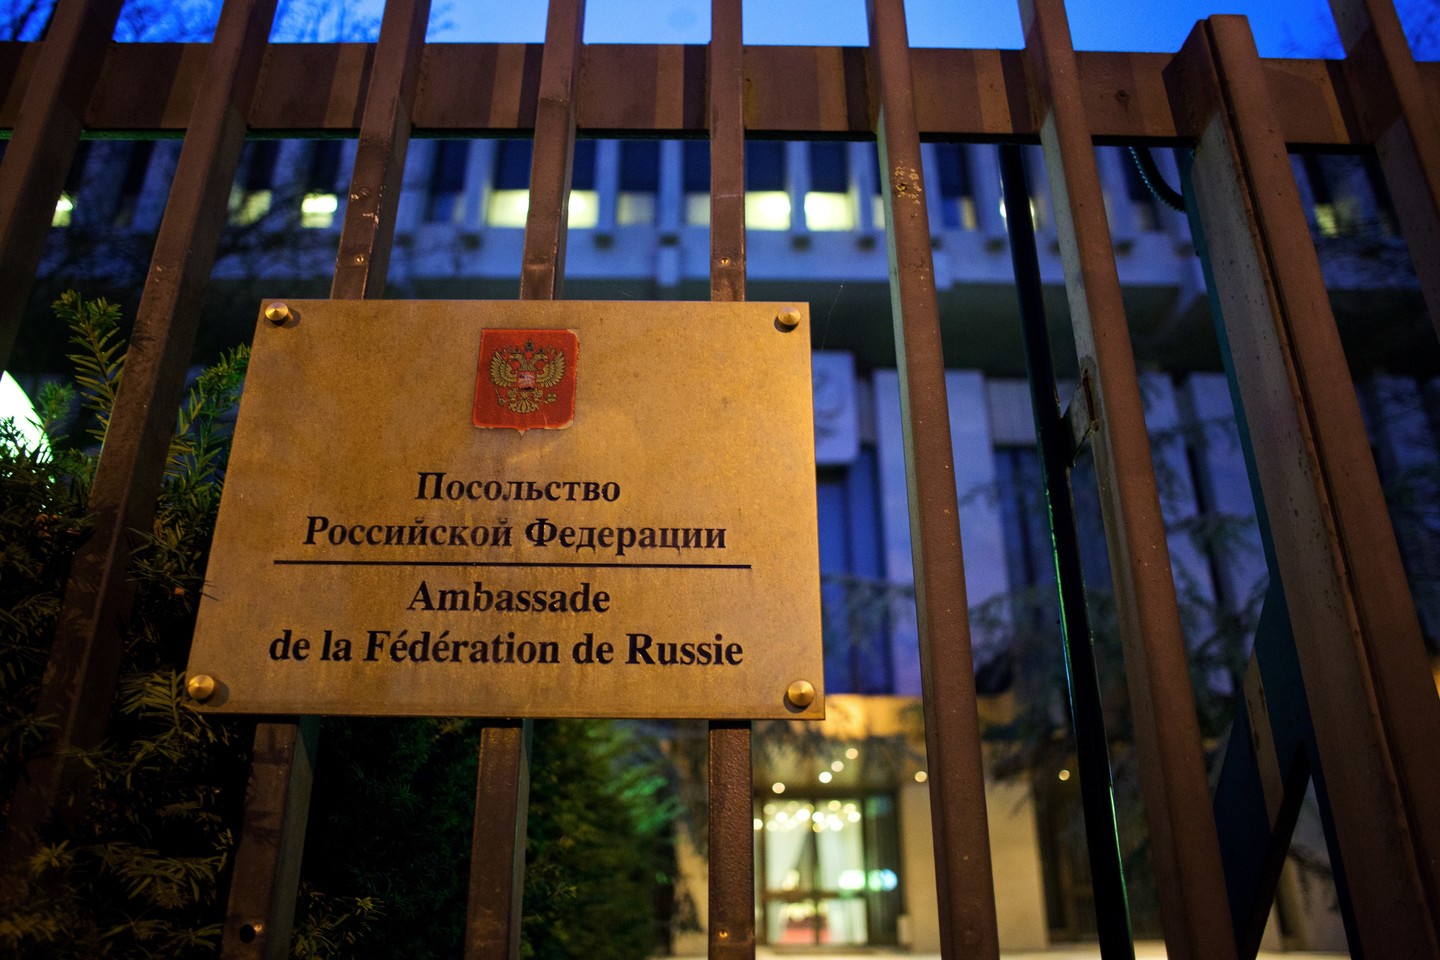 У Путина шокированы тем, что власти Франции наотрез отказались охранять Посольство Российской Федерации в Париже, - СМИ